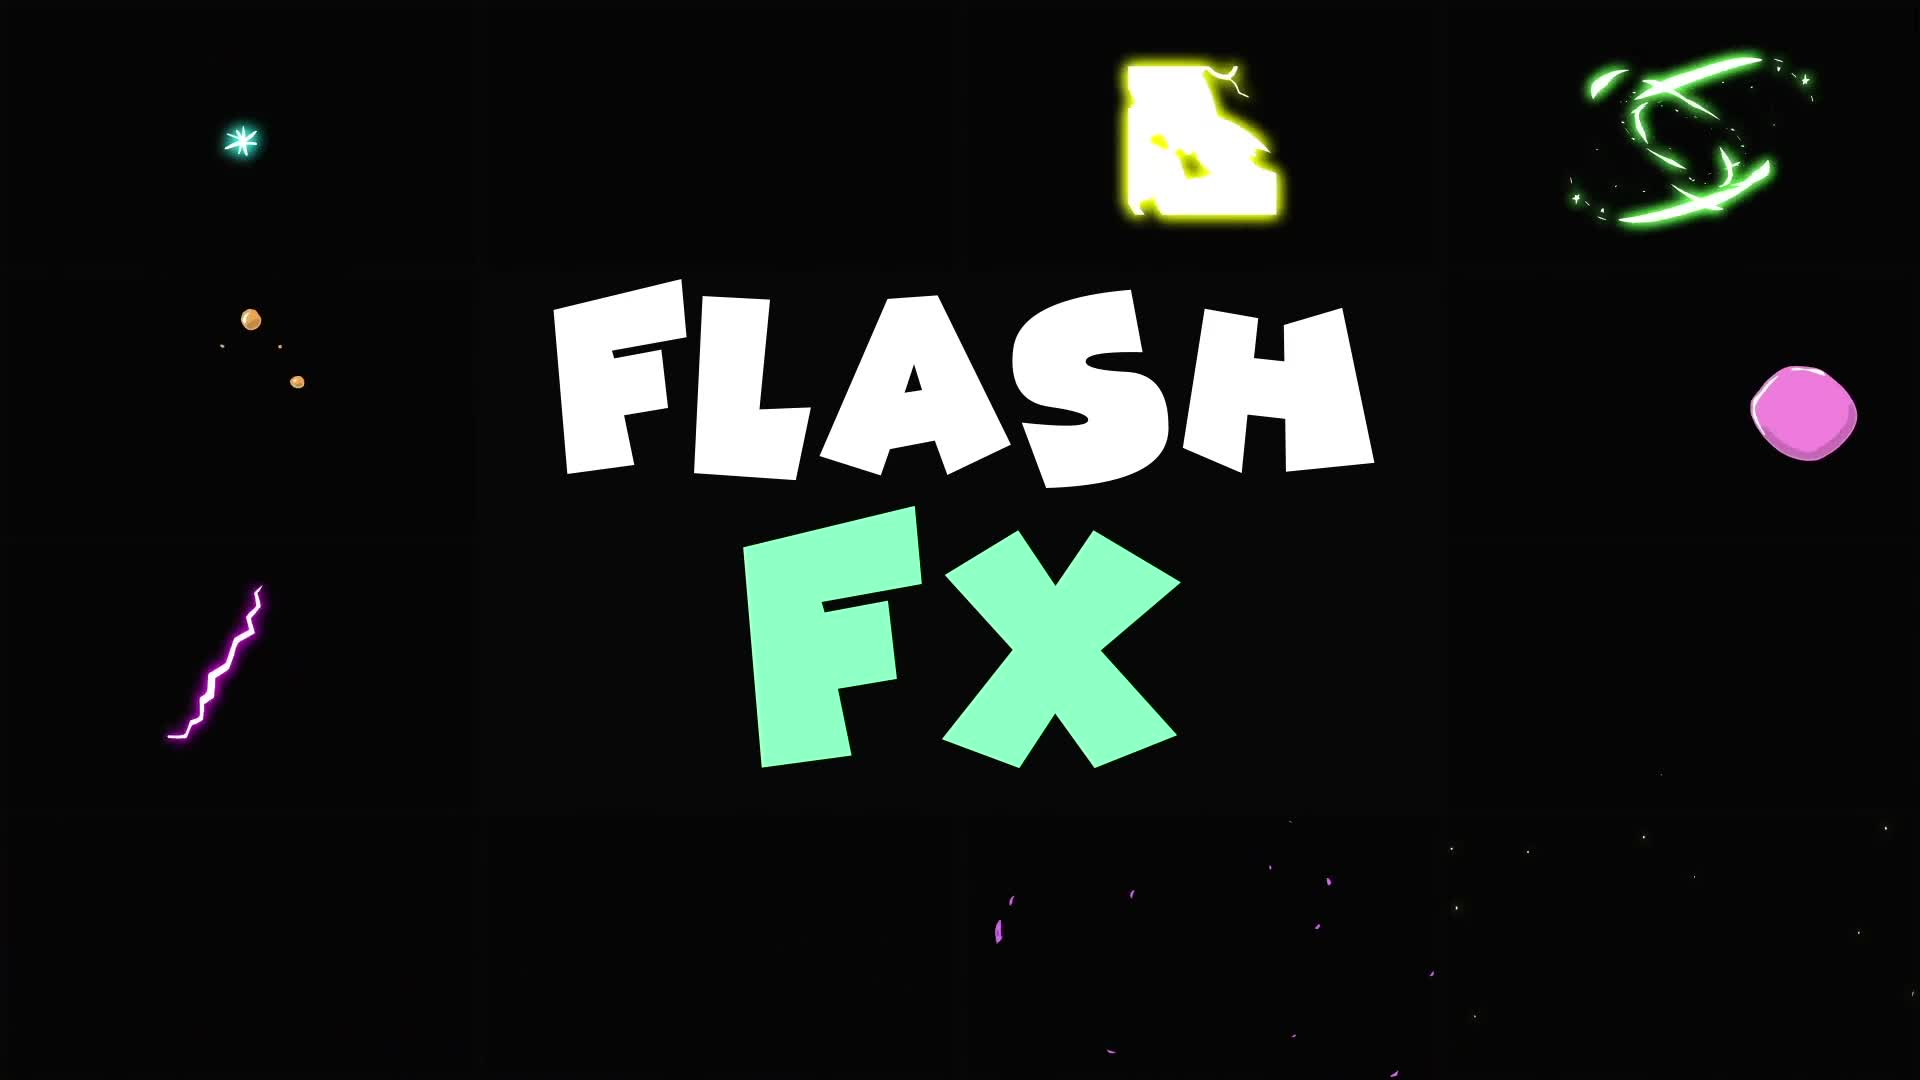 Flash FX Elements Pack | Premiere Pro MOGRT Videohive 32640445 Premiere Pro Image 2